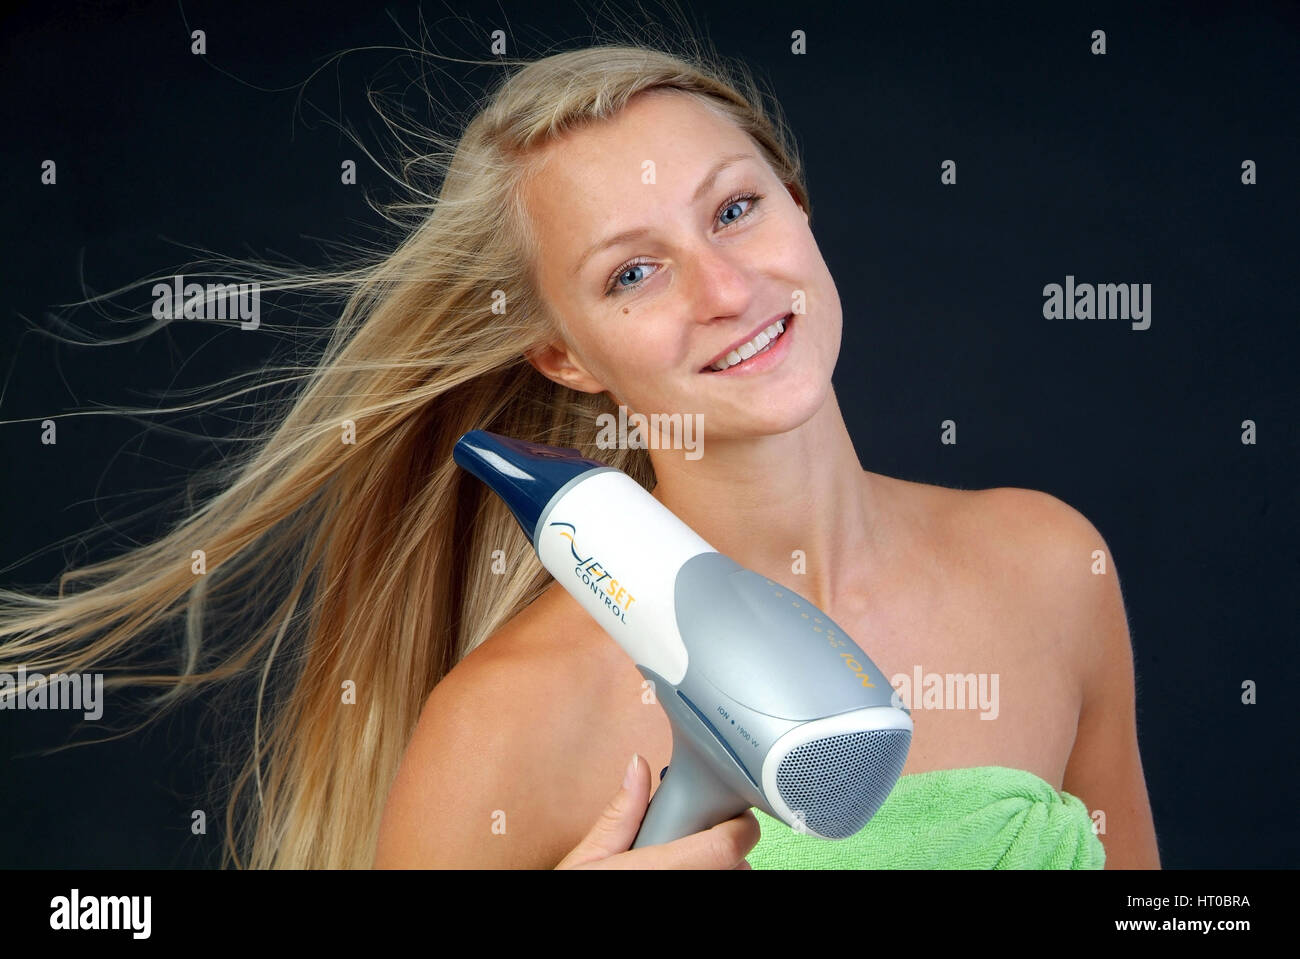 Junge, blonde Frau f?nt sich die Haare - woman with hair dryer Stock Photo